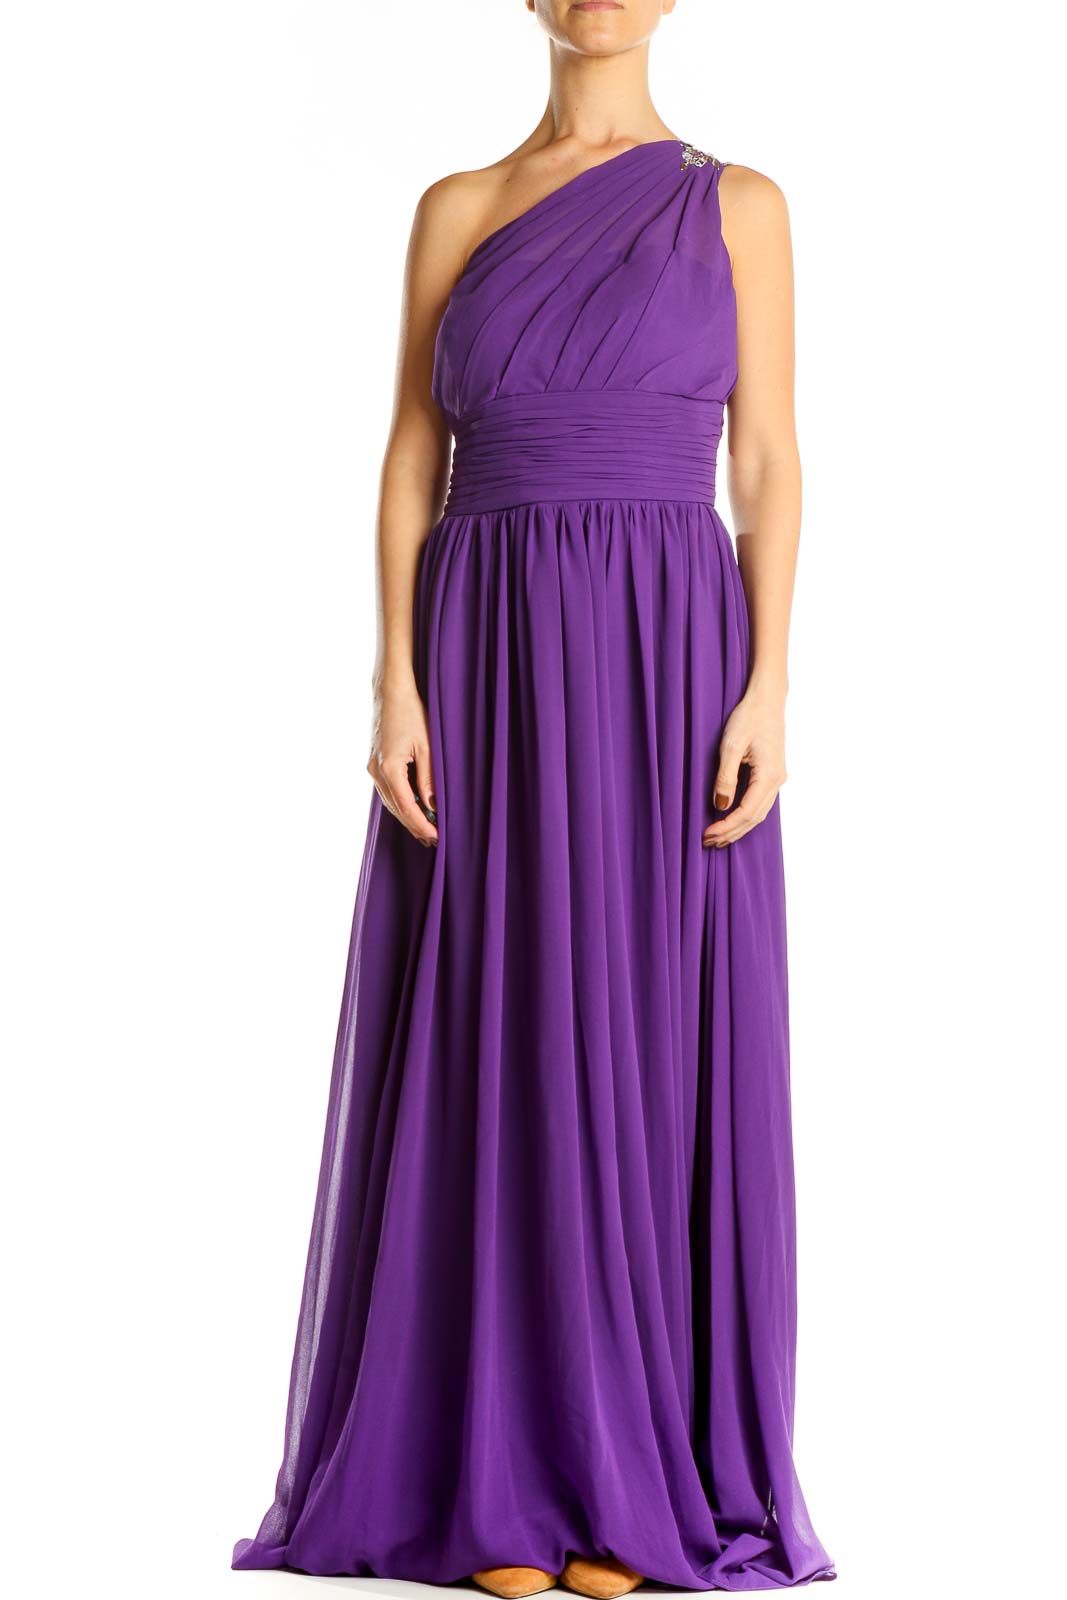 Purple One Shoulder Formal Column Dress Front